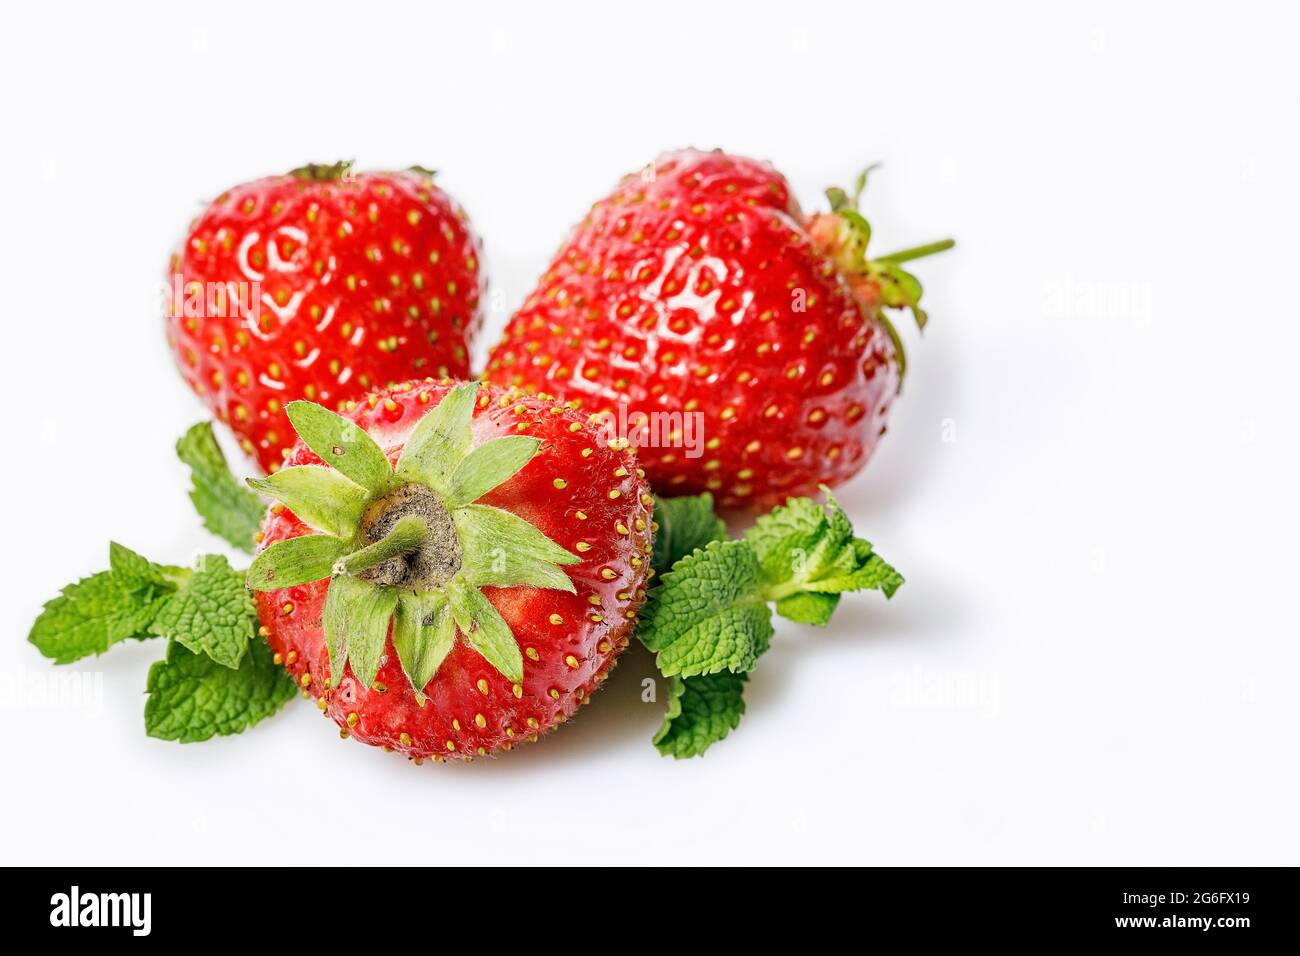 Reife Erdbeeren und frische Minze auf weißem Hintergrund. Süße, saftige Erdbeeren und Minzblätter. Bio fettfreie, kalorienarme Lebensmittel. Nahaufnahme. Kopie en Stockfoto